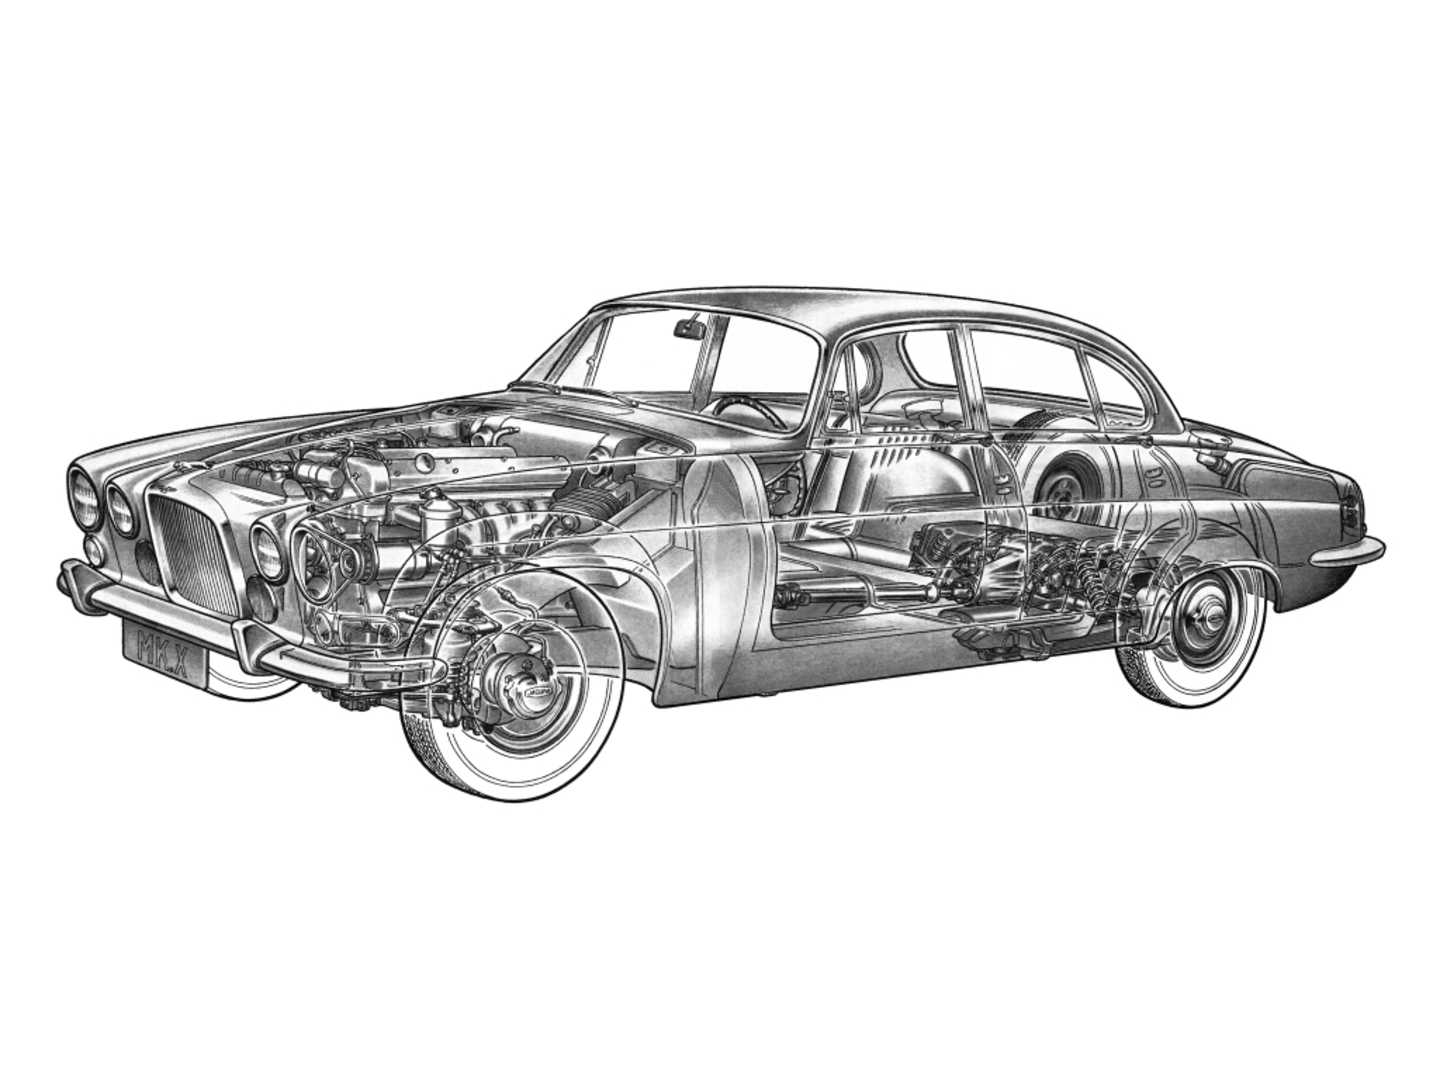 Schéma mécanique de la Jaguar Mark X